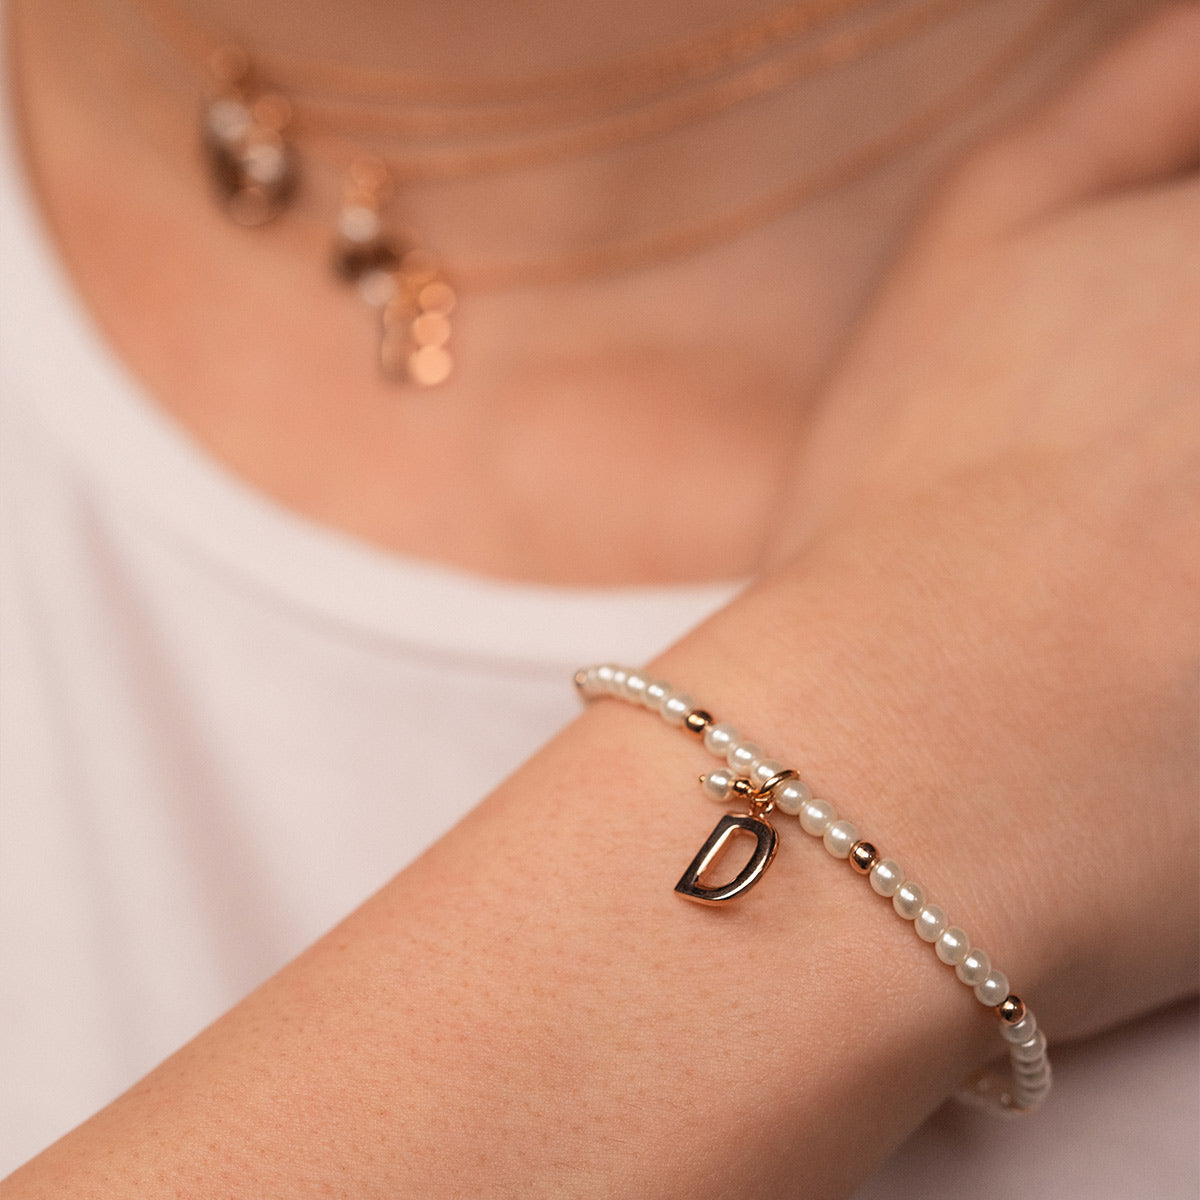 Bracelets - Elastic bracelet with pearls and balls - LETTER - 2 | Rue des Mille